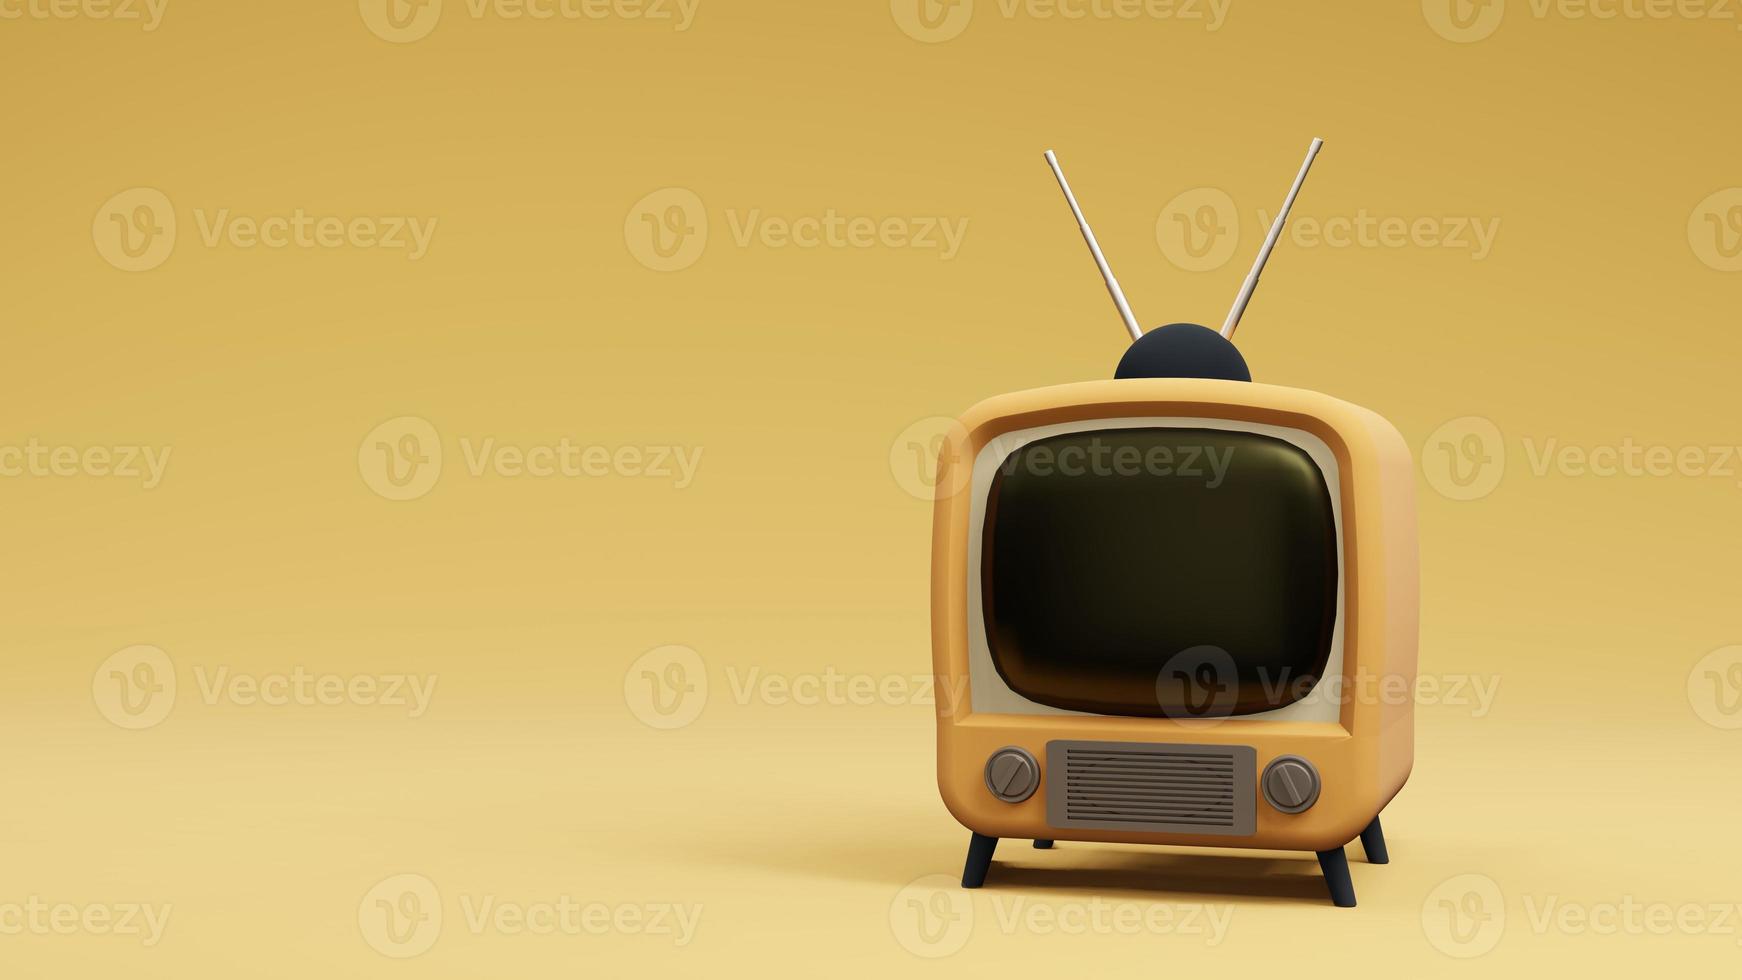 televisione tv design vintage, rendering 3d foto